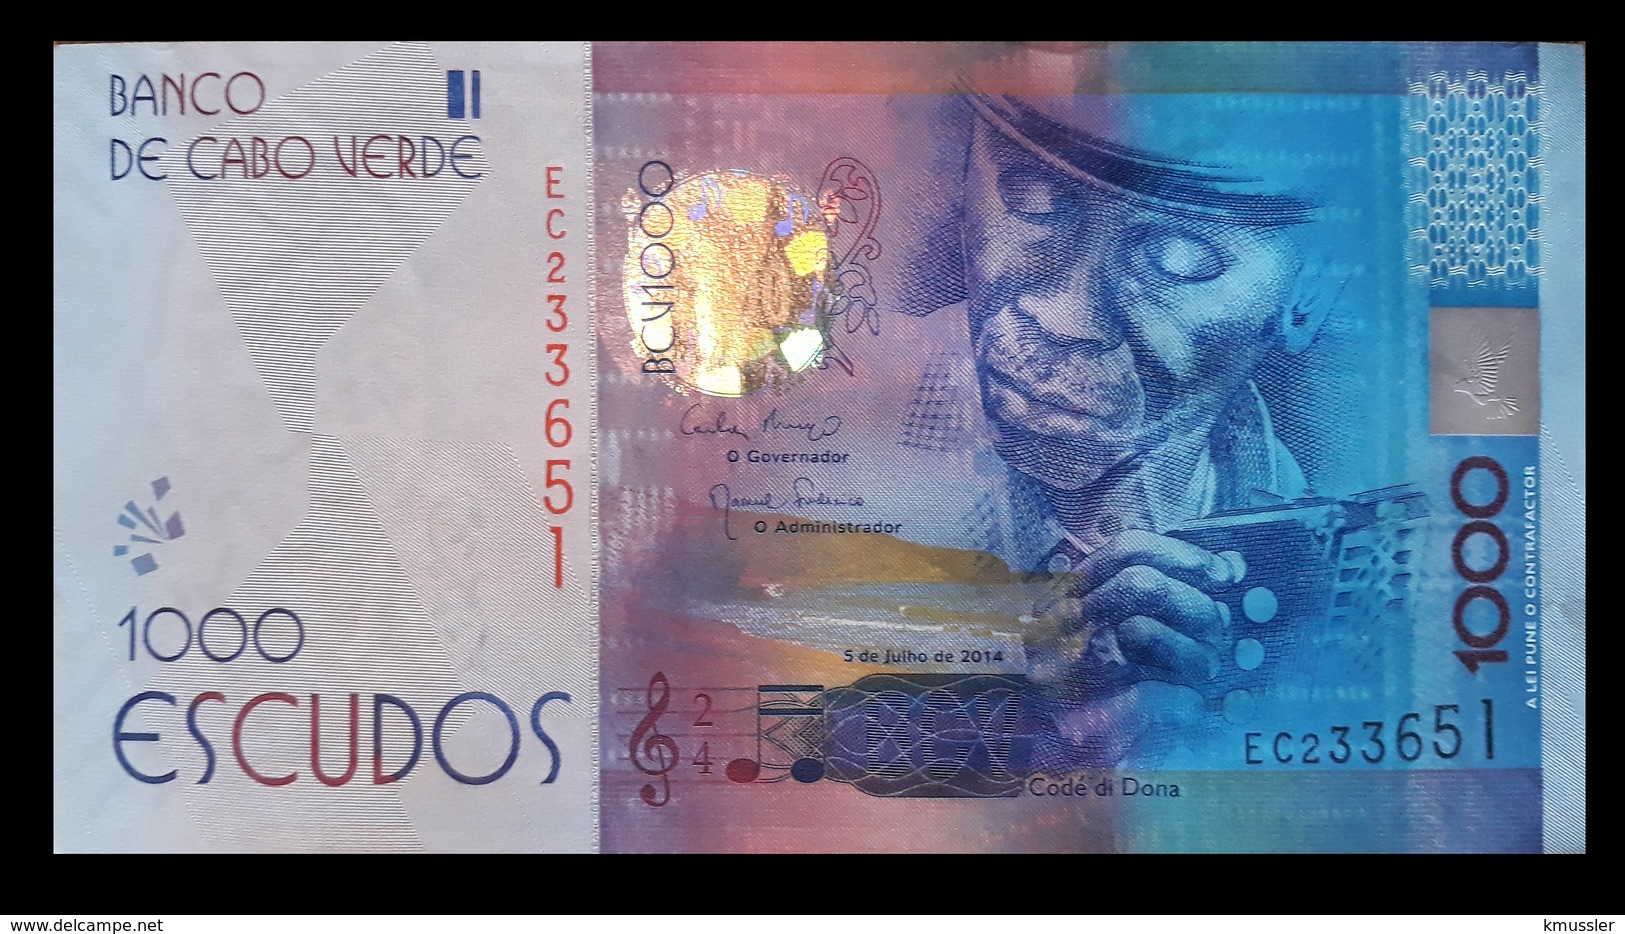 # # # Banknote Kap Verden (Cape Verde) 1.000 Escudos UNC # # # - Cape Verde